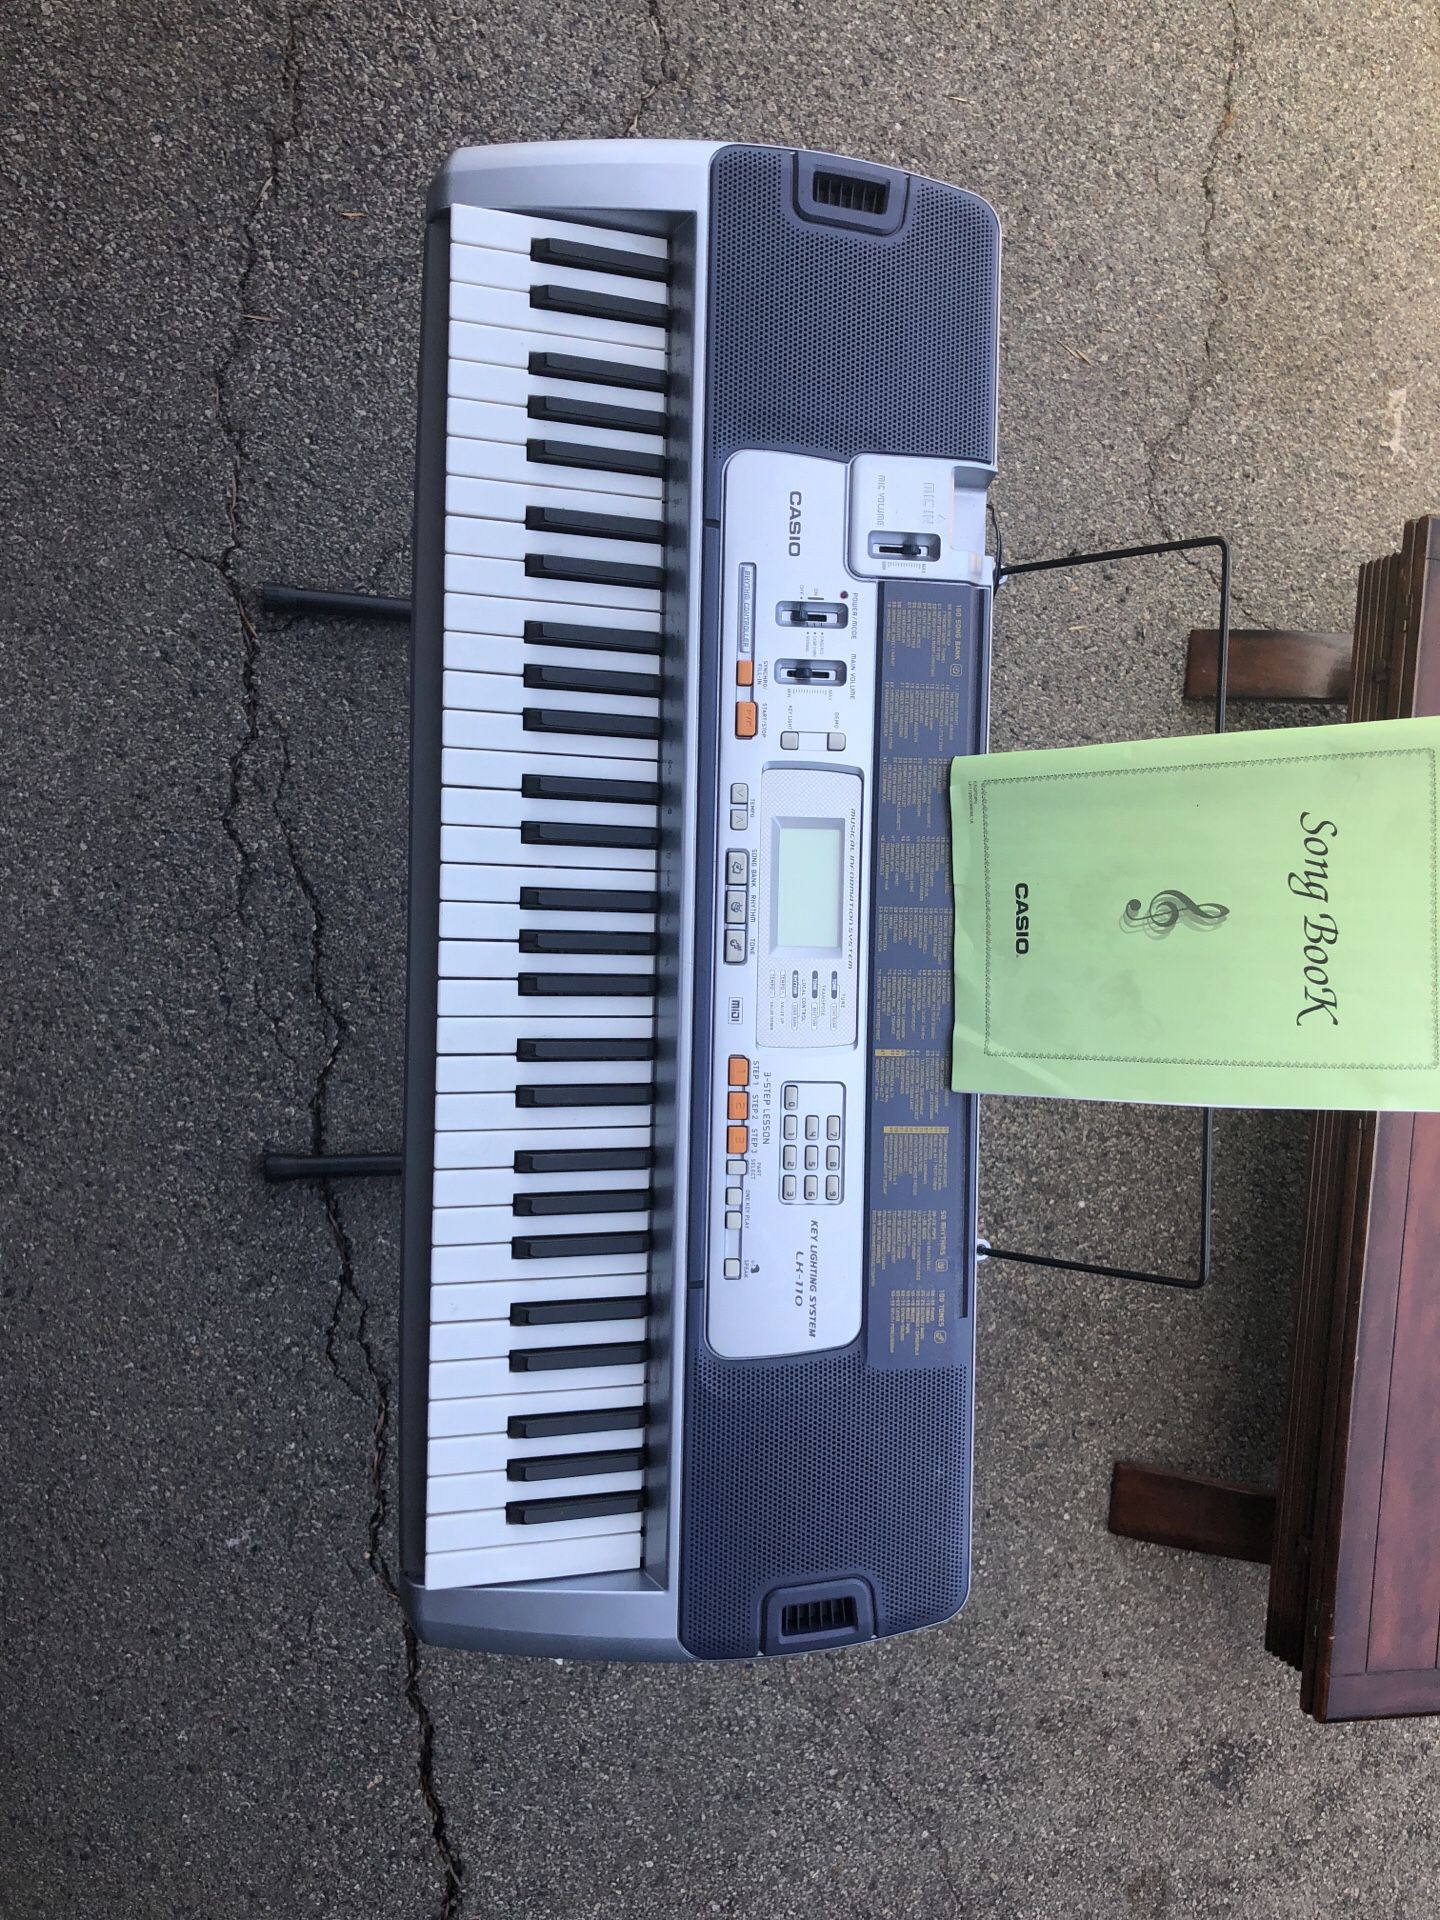 Casio LK-110 keyboard for Sale Los CA OfferUp